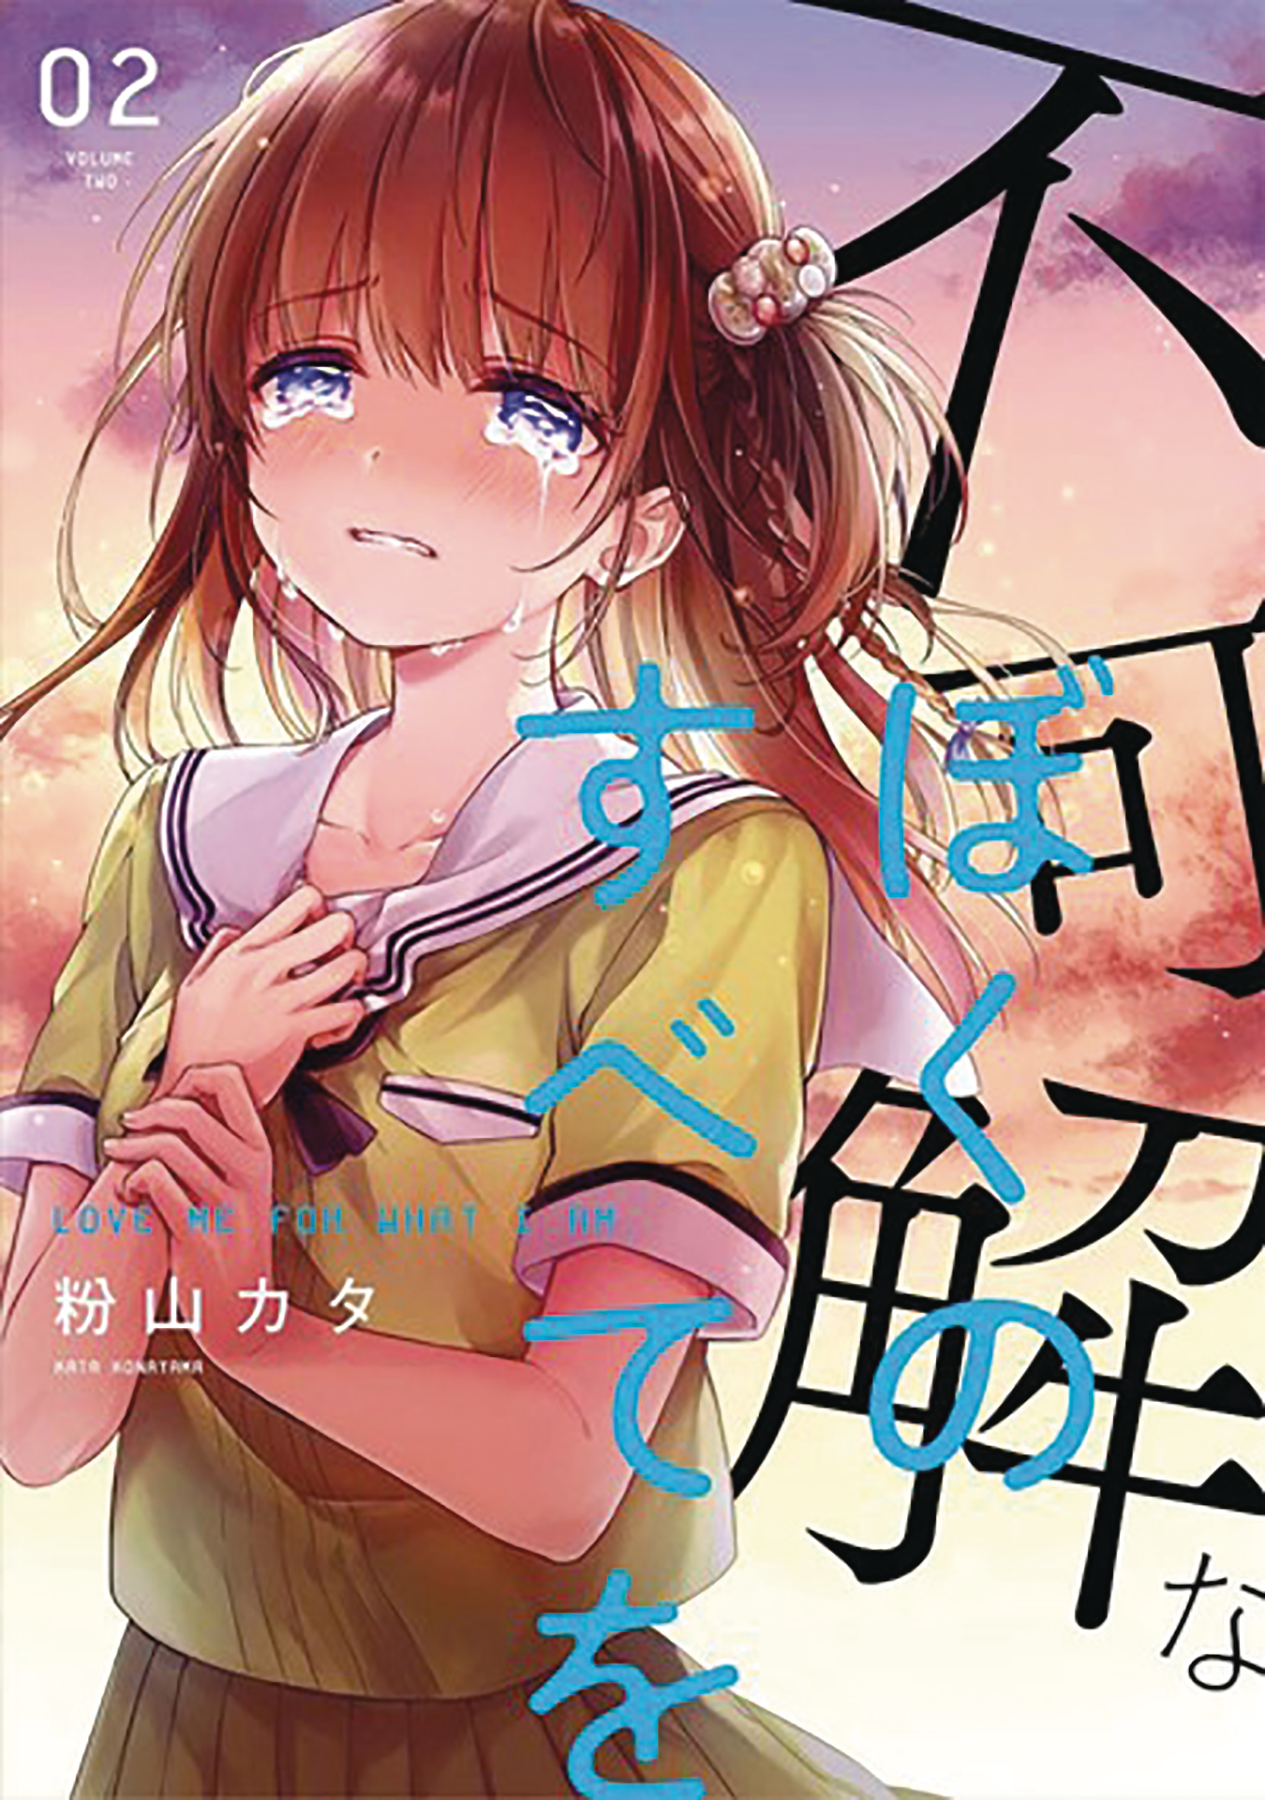 Love Me for Who I Am Manga Volume 2 (Mature)